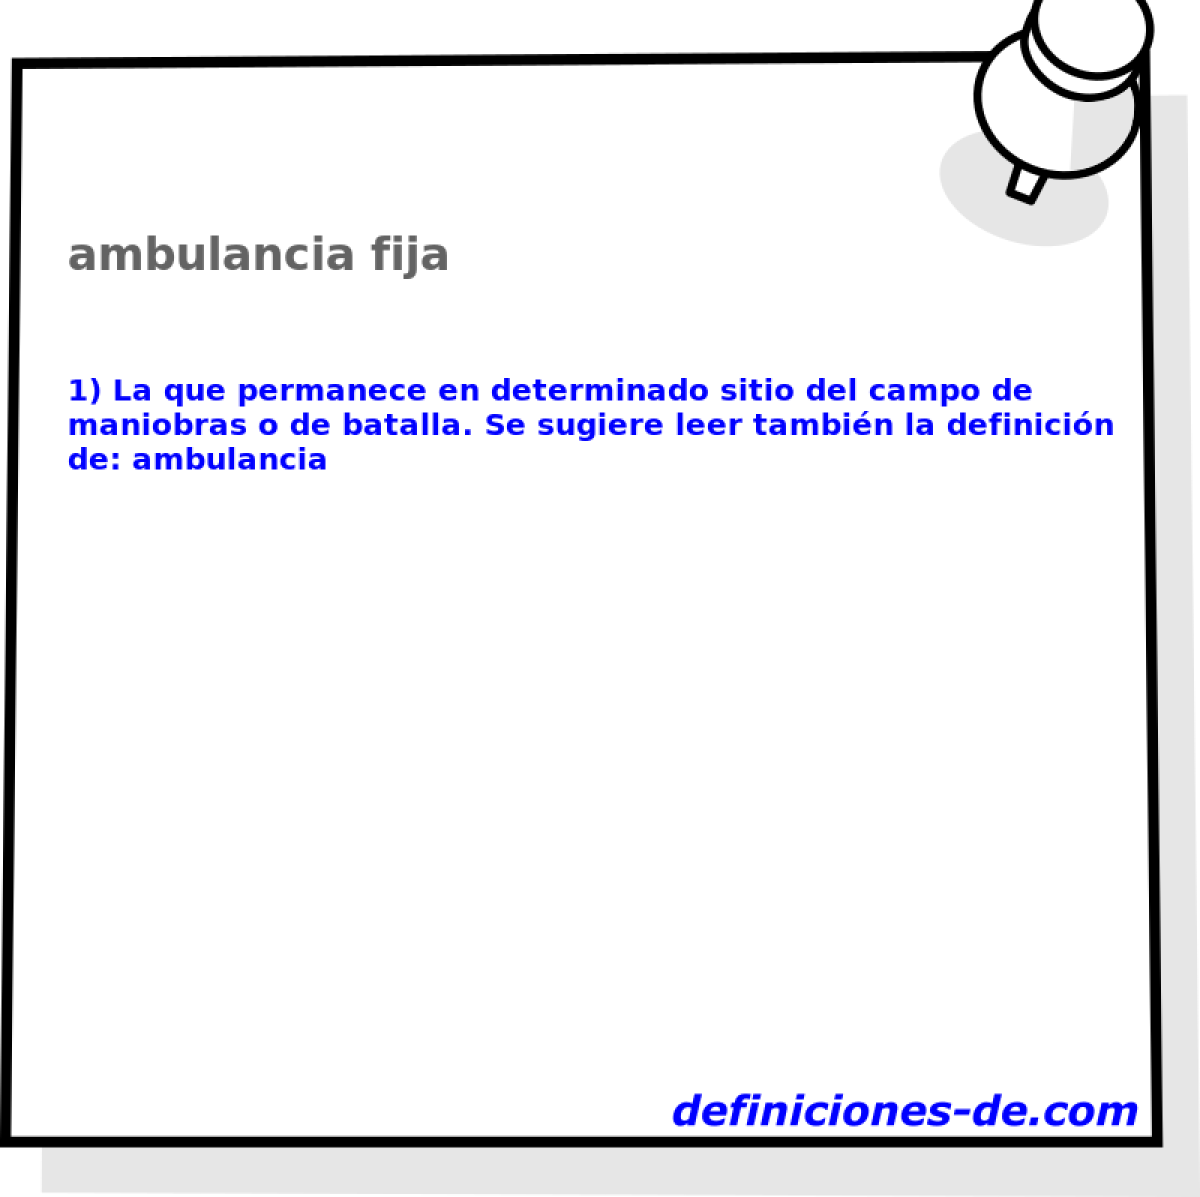 ambulancia fija 